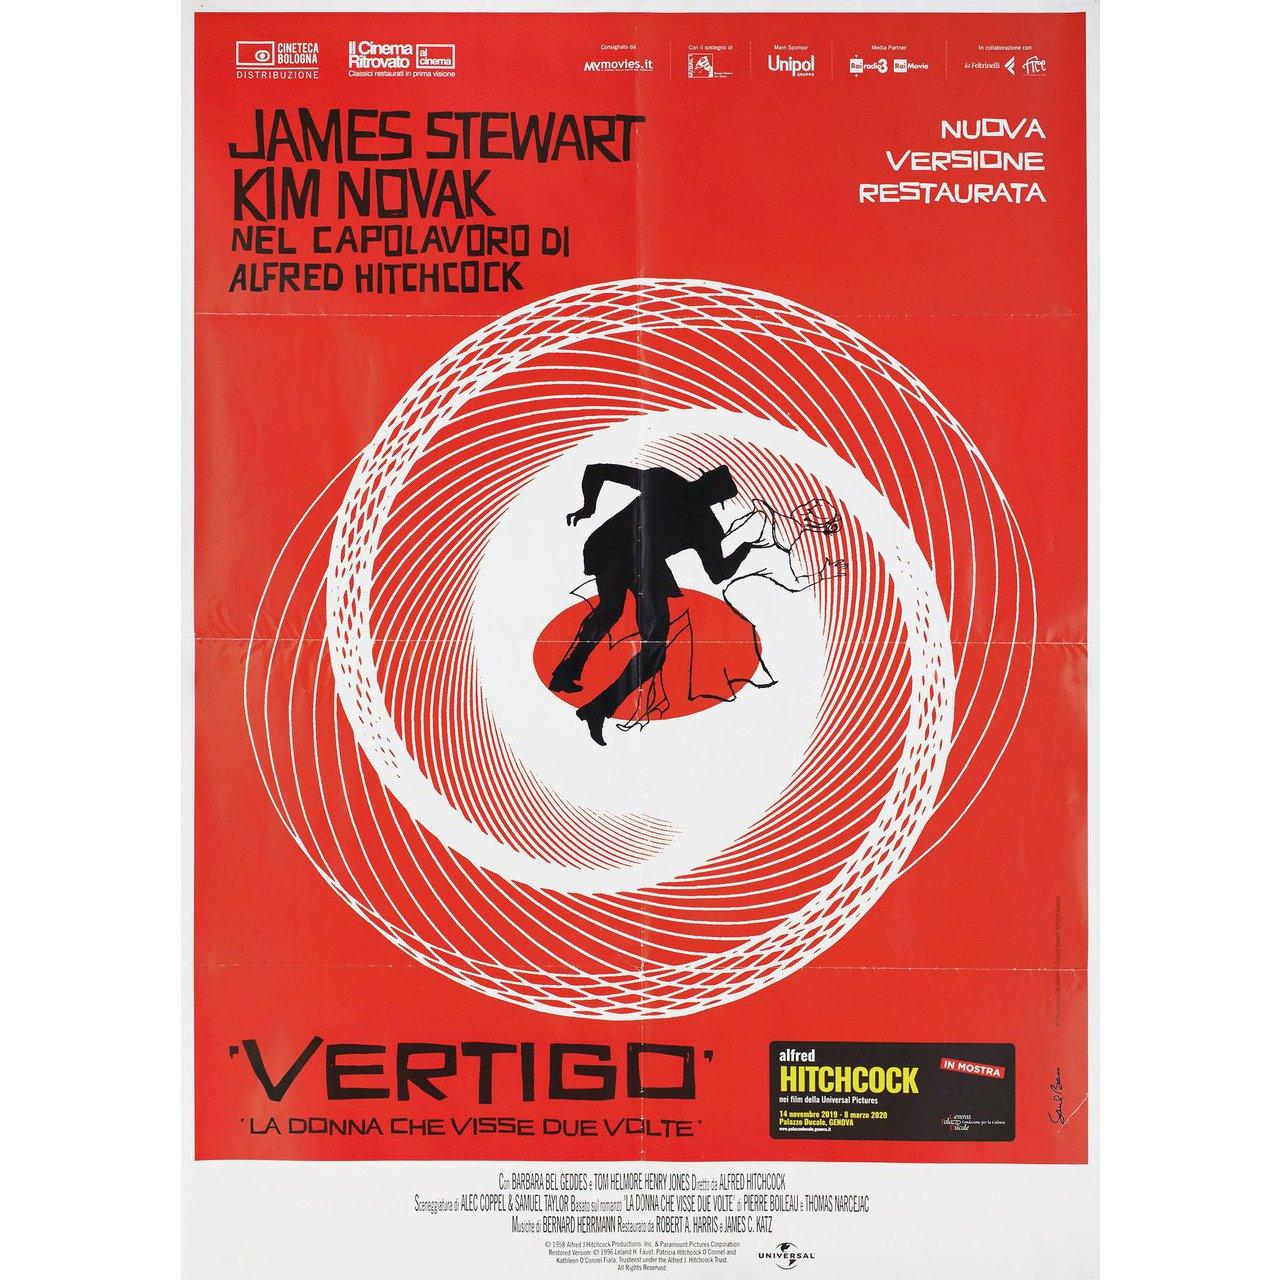 Contemporary 'Vertigo' R2019 Italian Due Fogli Film Poster